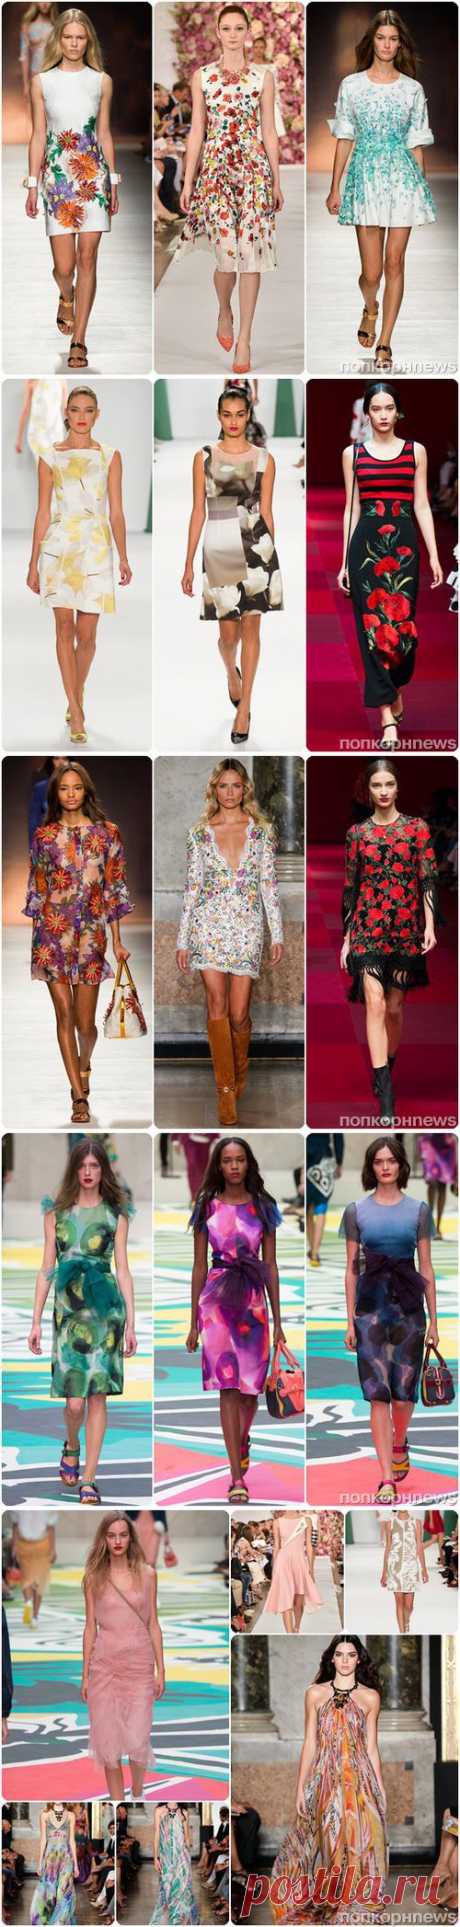 Модные платья весна-лето 2015: фото модных фасонов и моделей- popcornnews